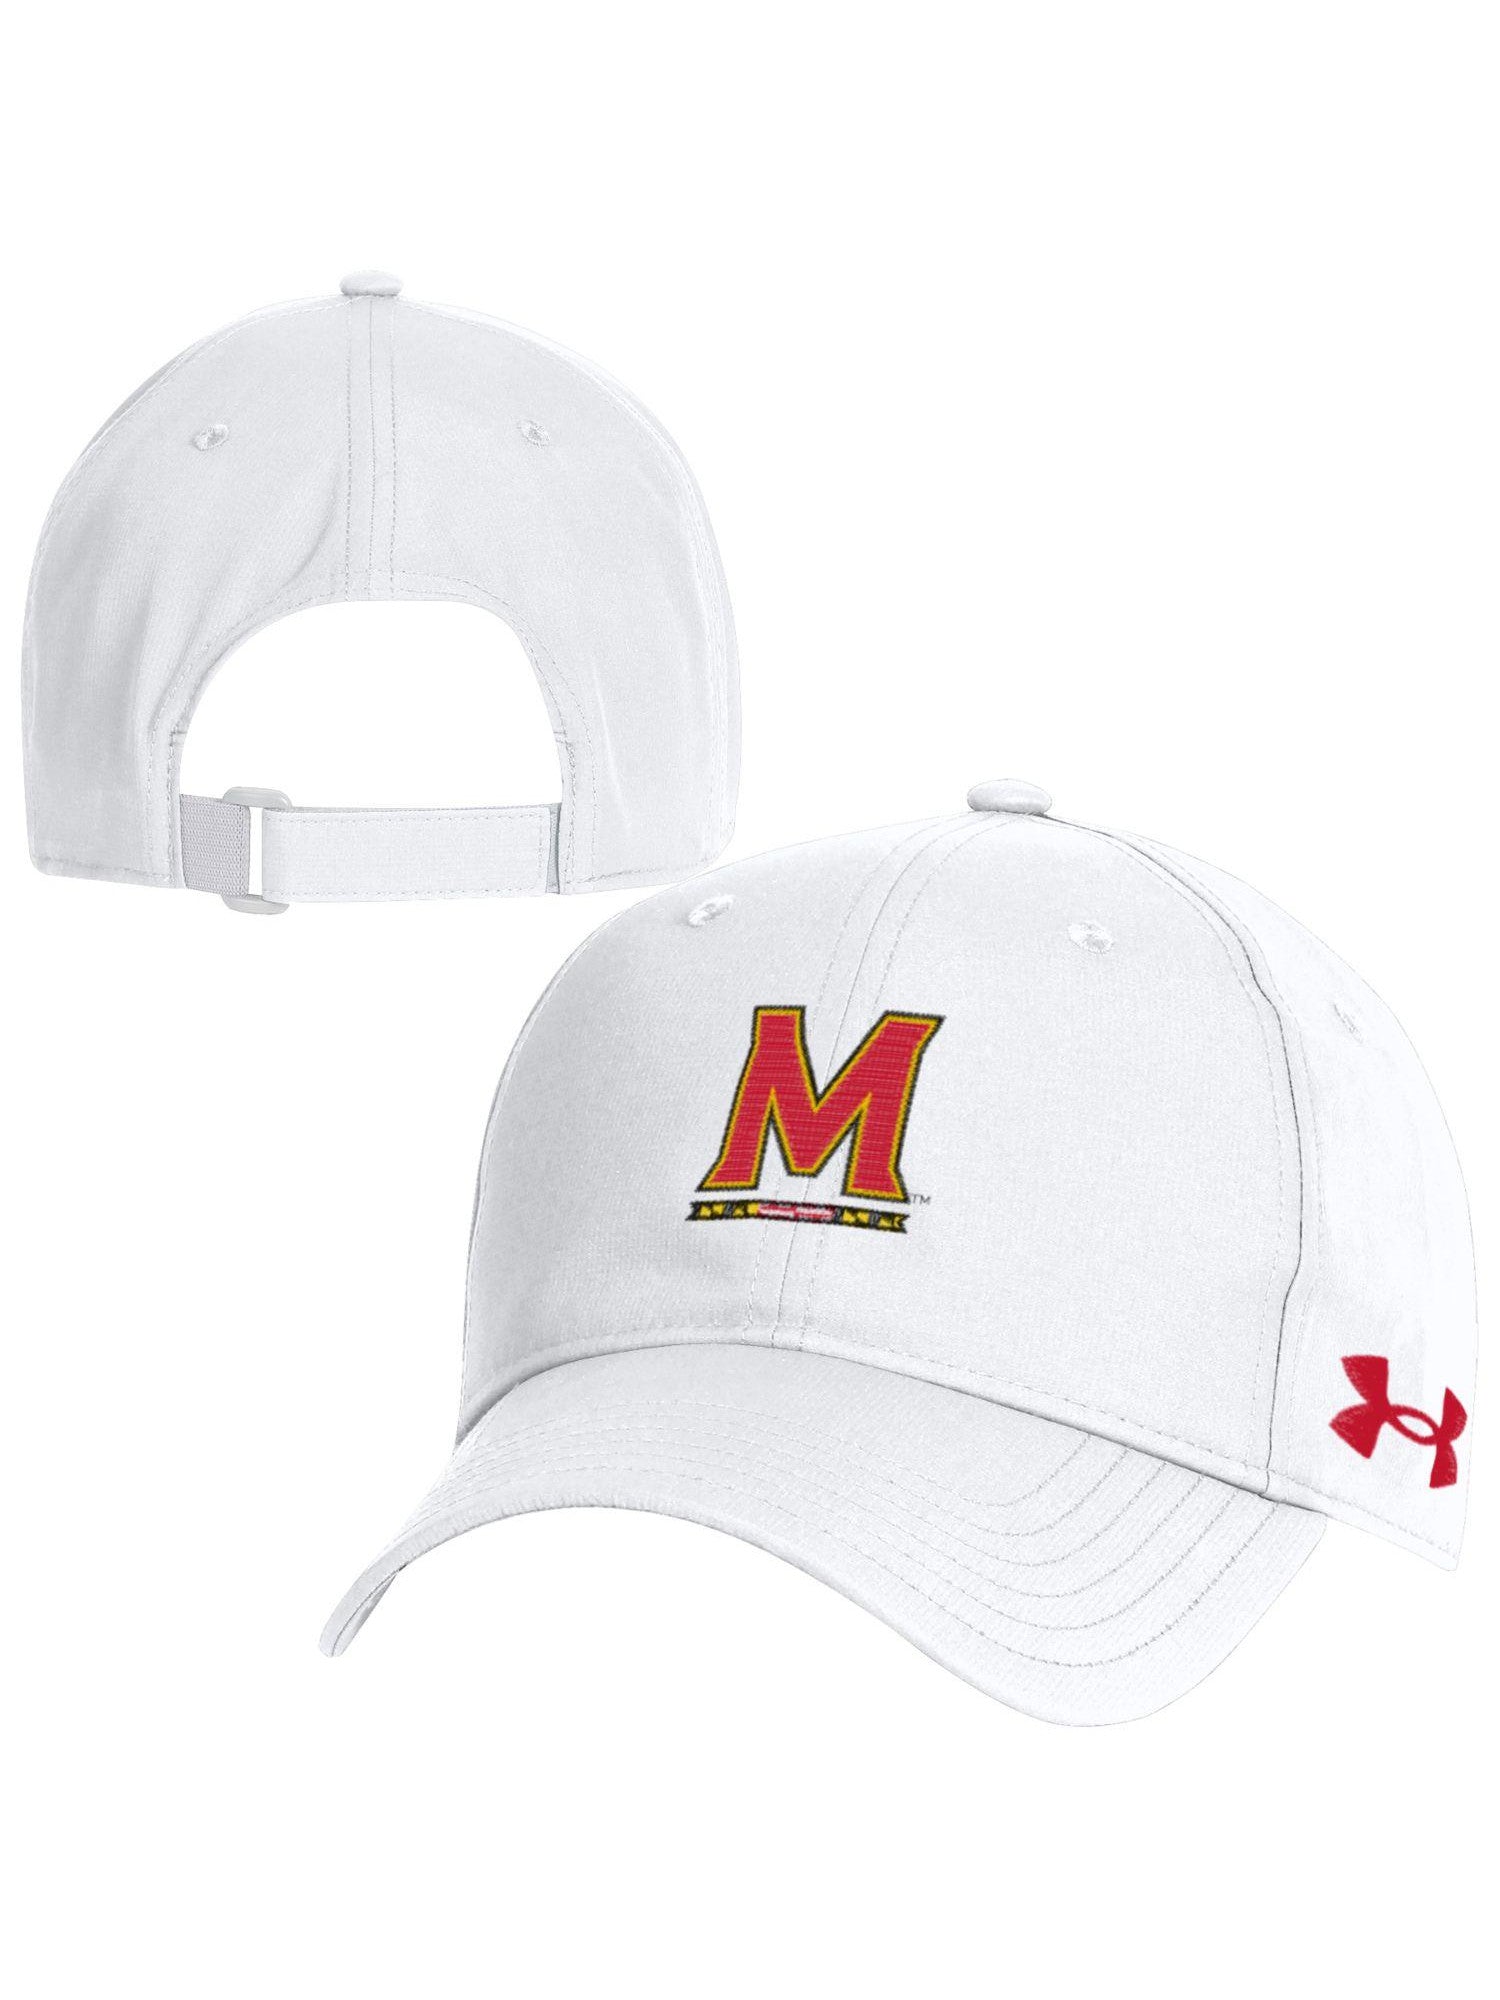 Under Armor University of (White) Cap – Maryland Baseball Maryland Gifts